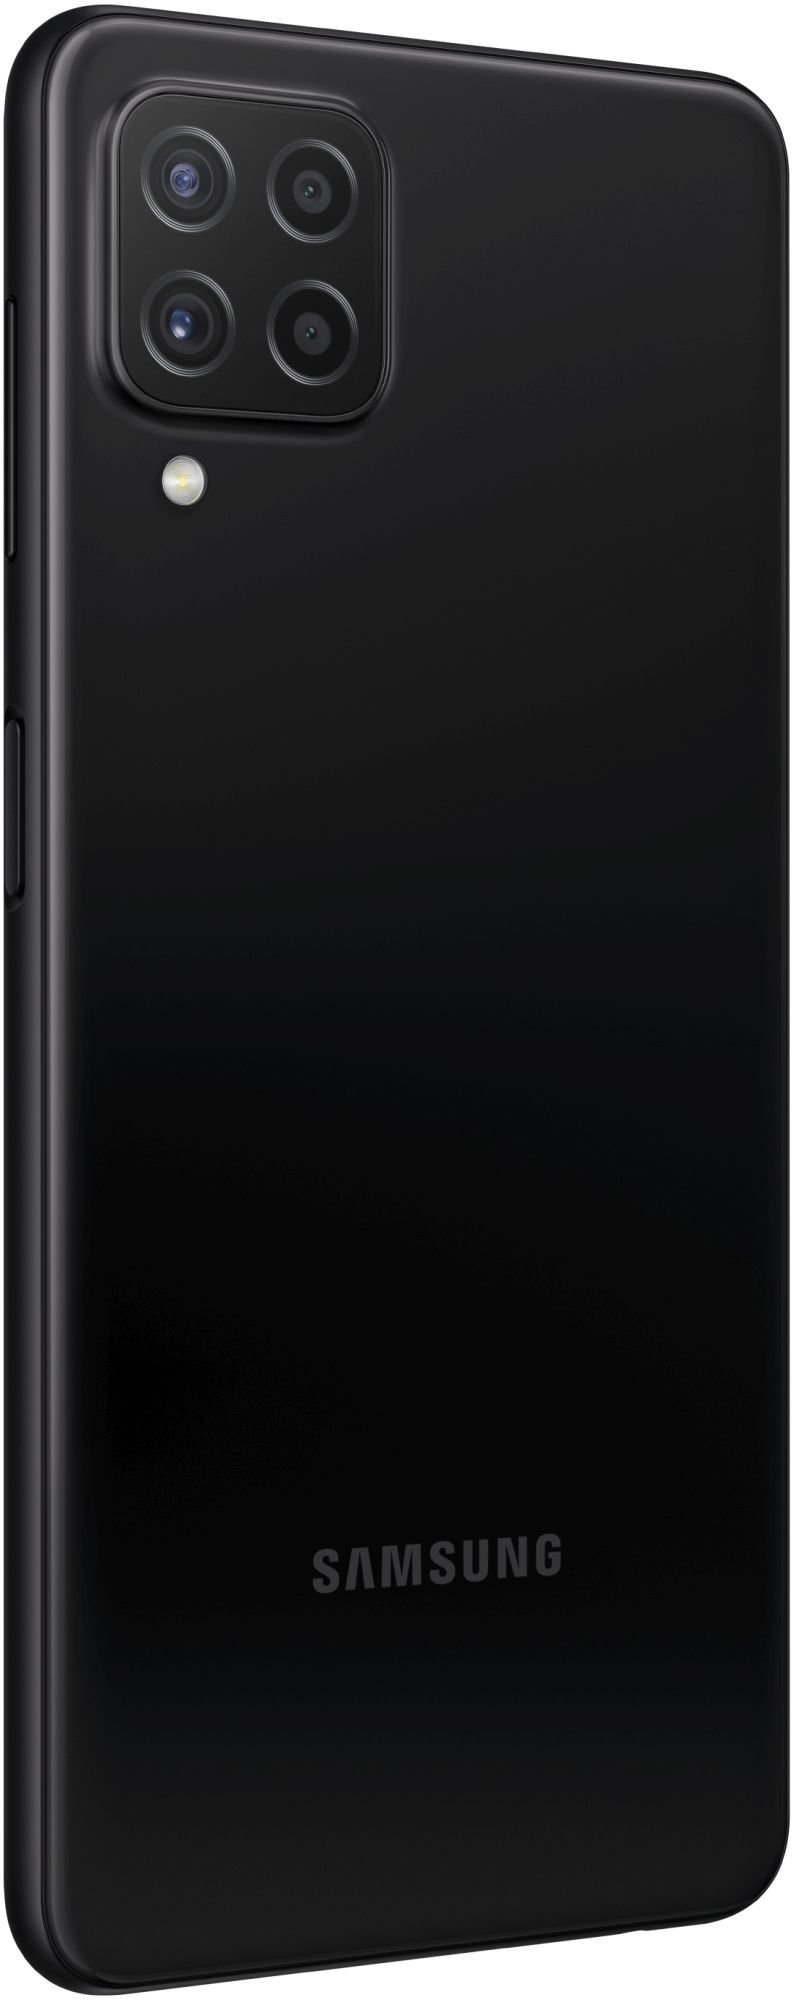 Samsung Galaxy A22 128GB black